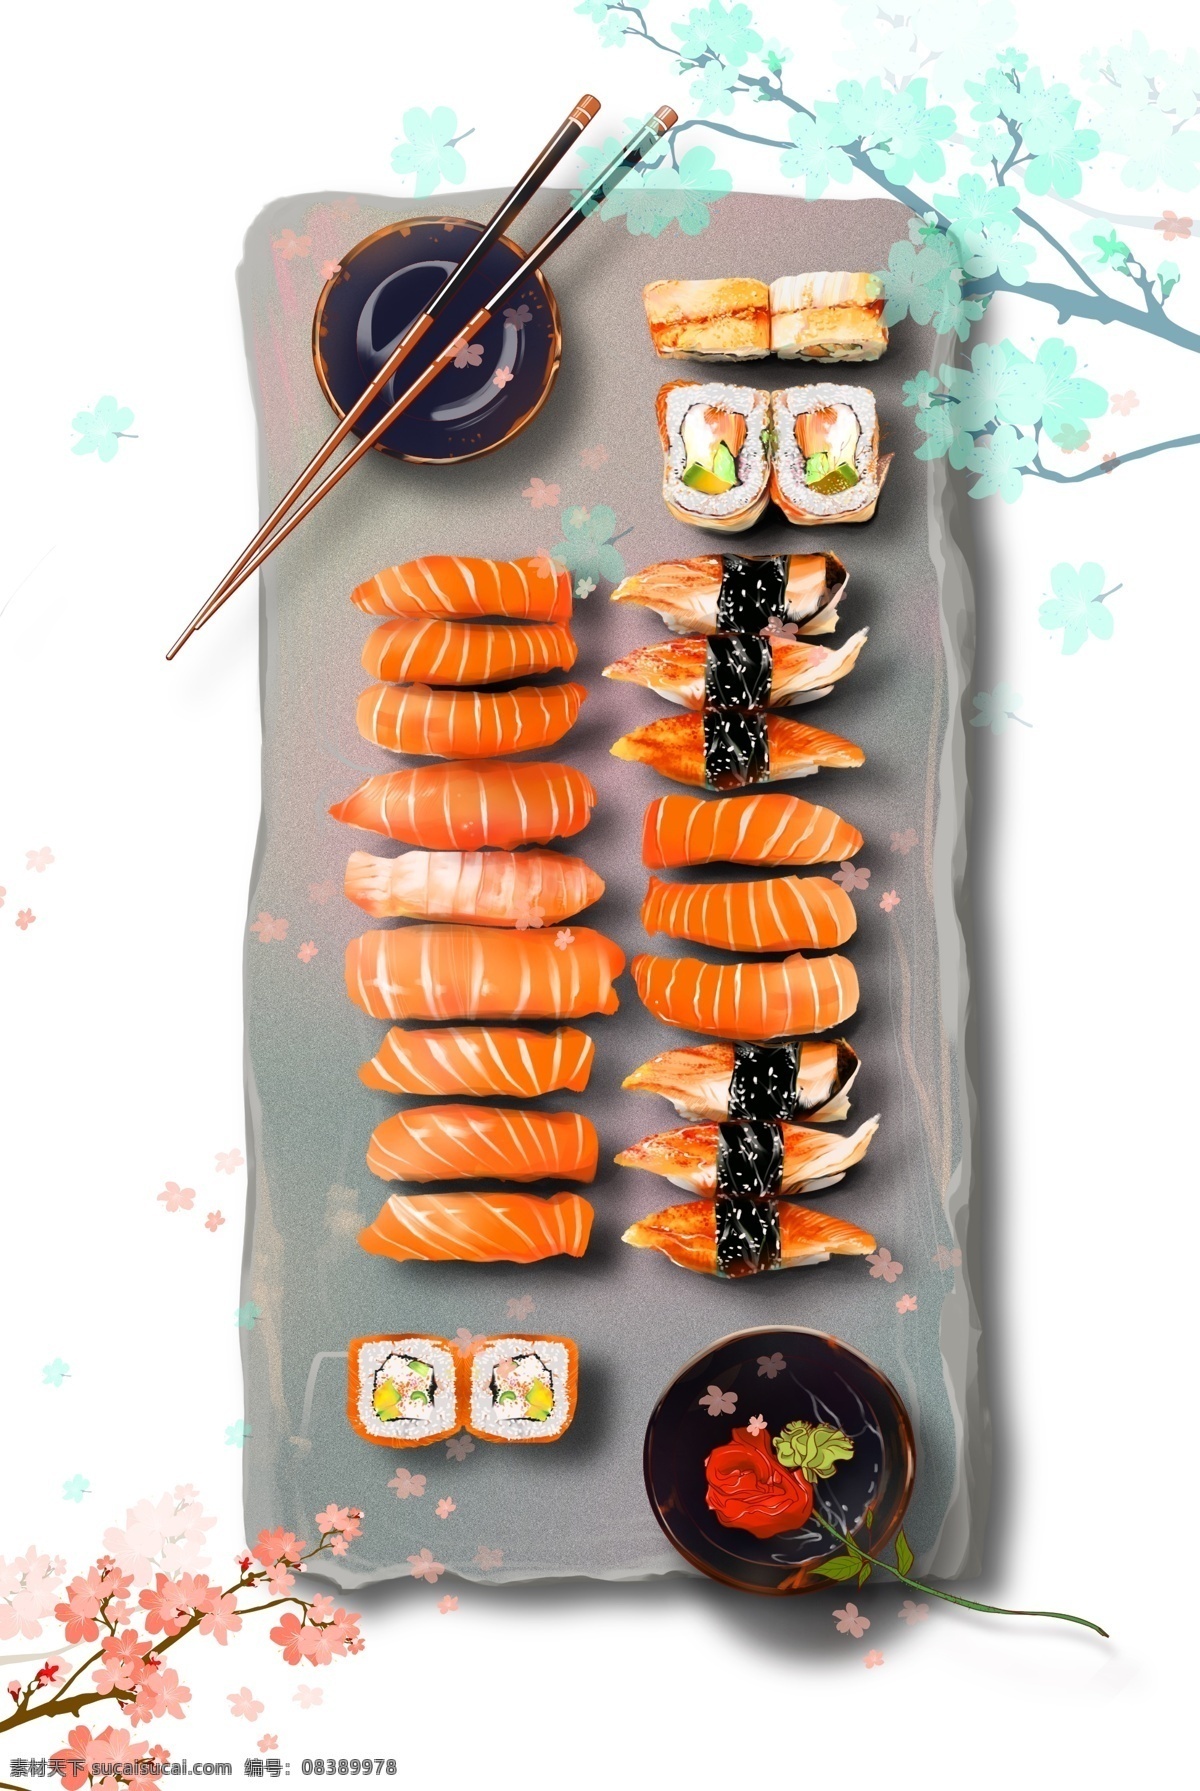 手绘 日式 寿司 装饰 元素 蓝色小花 筷子 装饰元素 手绘食物 灰色盘子 日式美食 日式元素